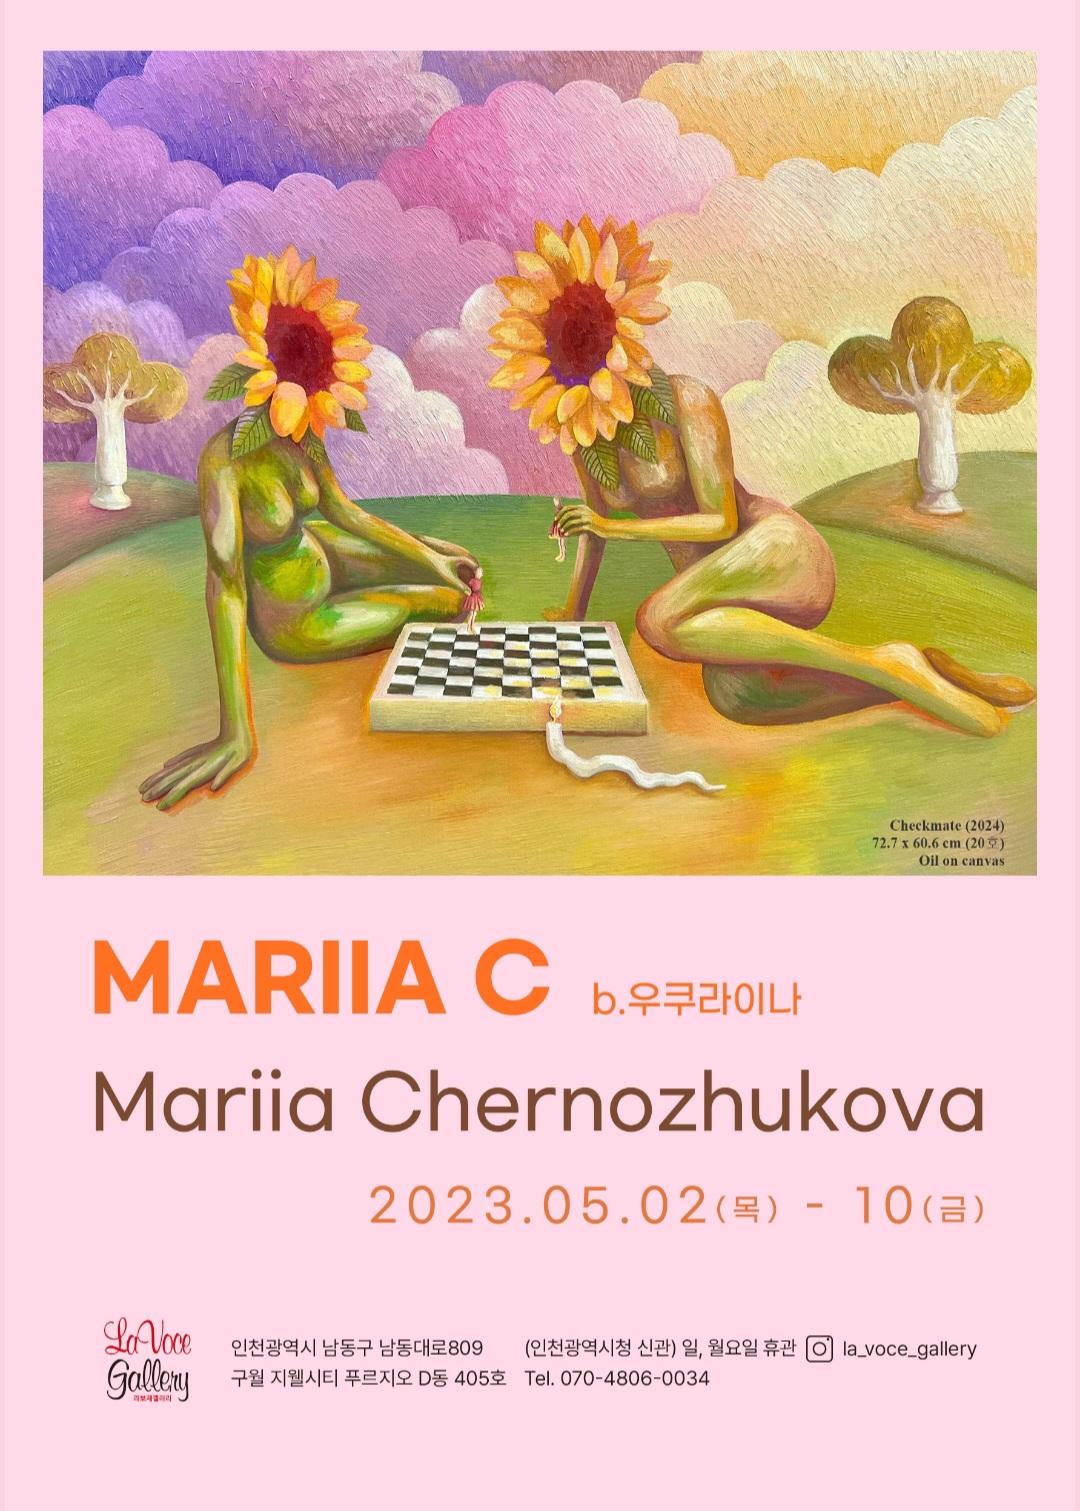 MARIIA C - Mariia Chernozhukova 포스터